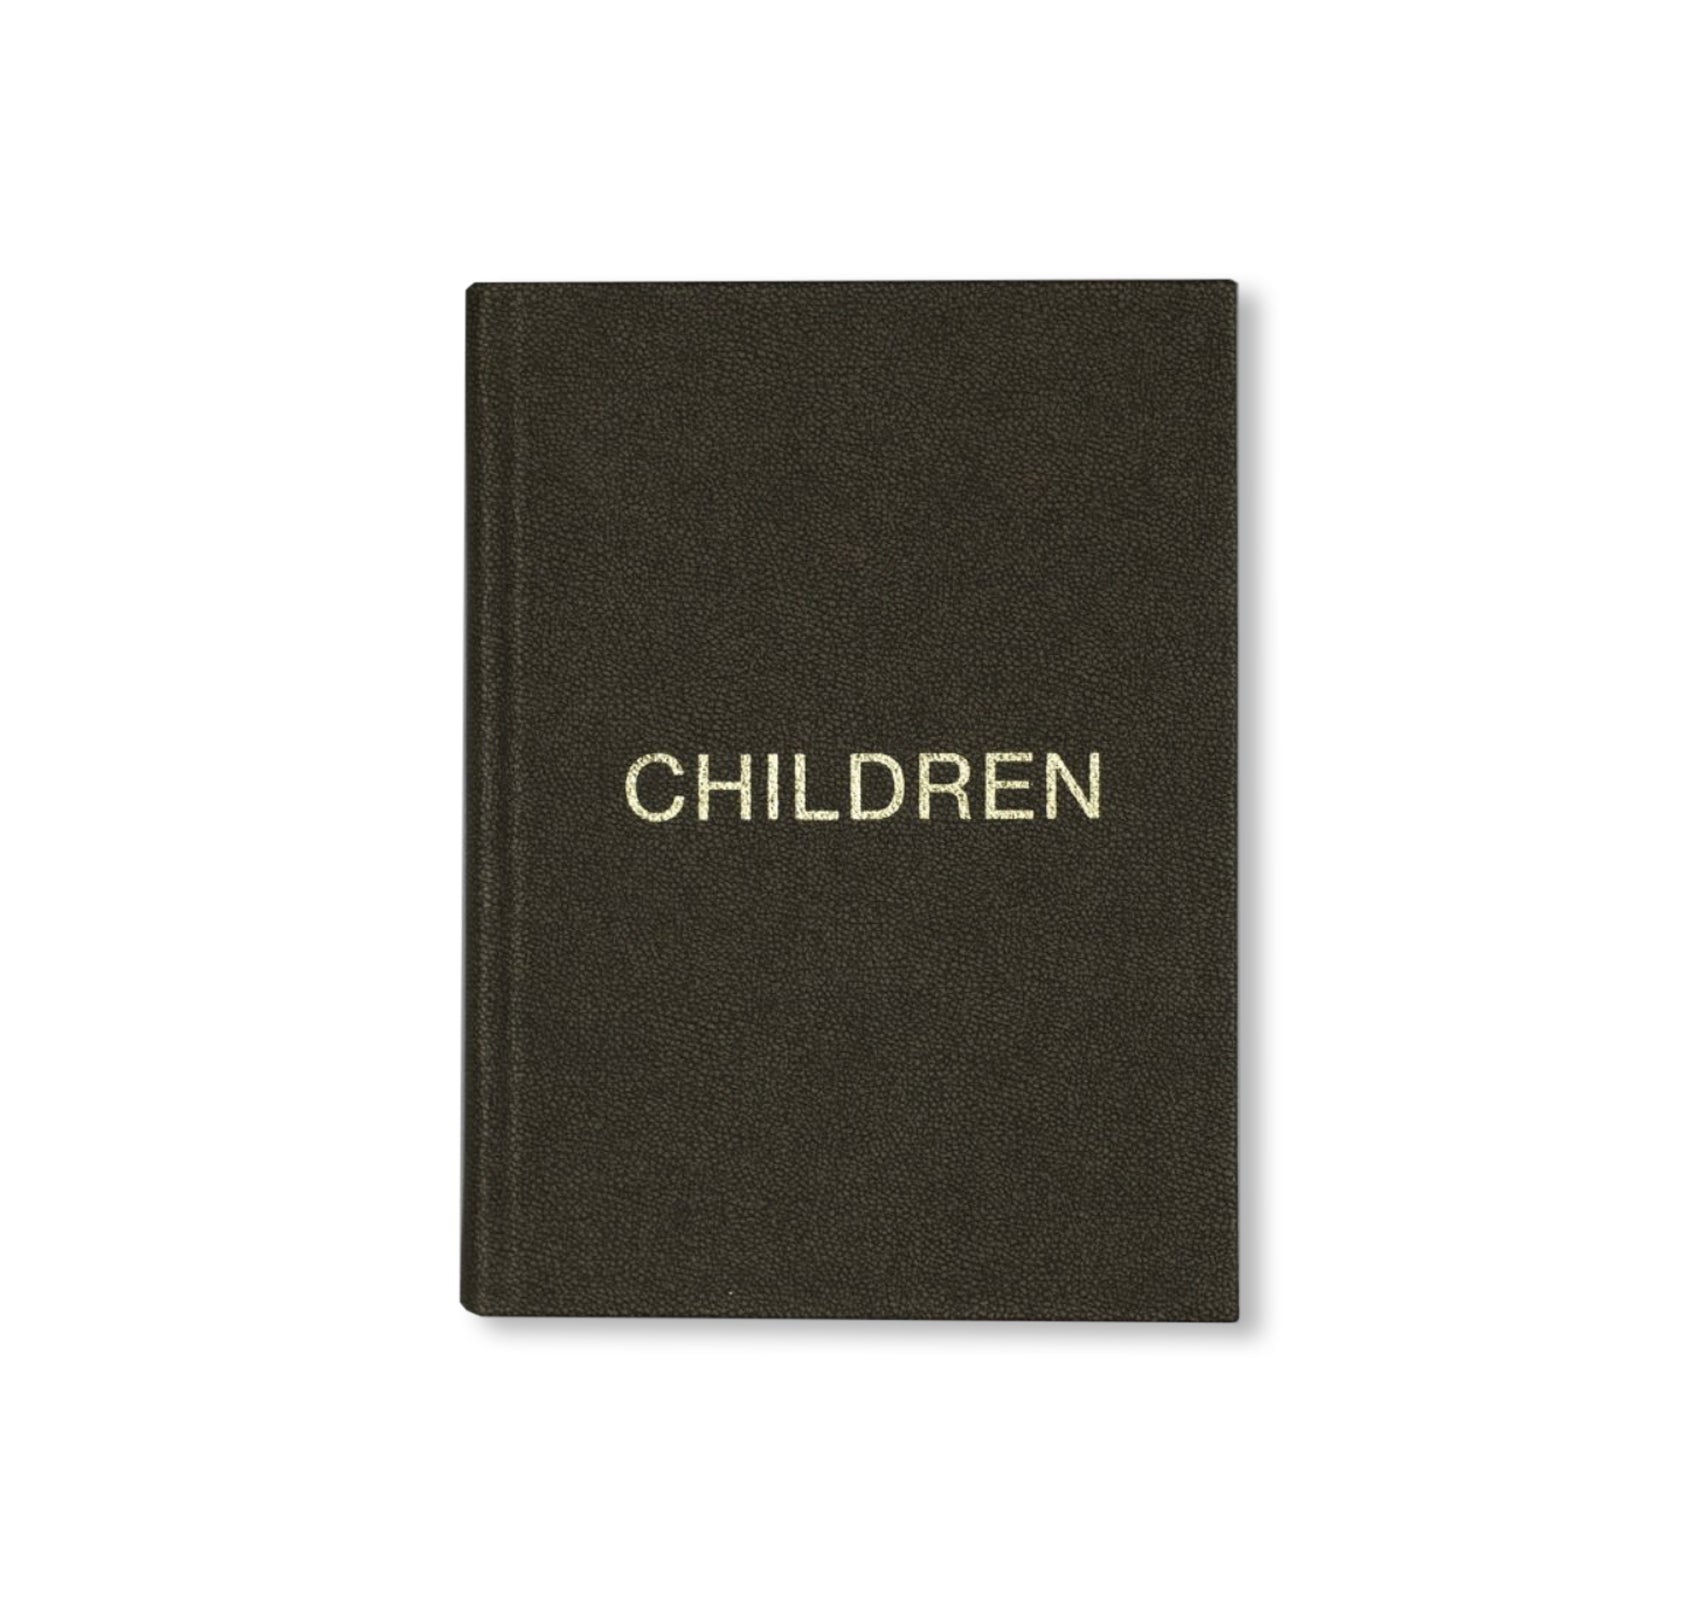 CHILDREN by Olivier Suter